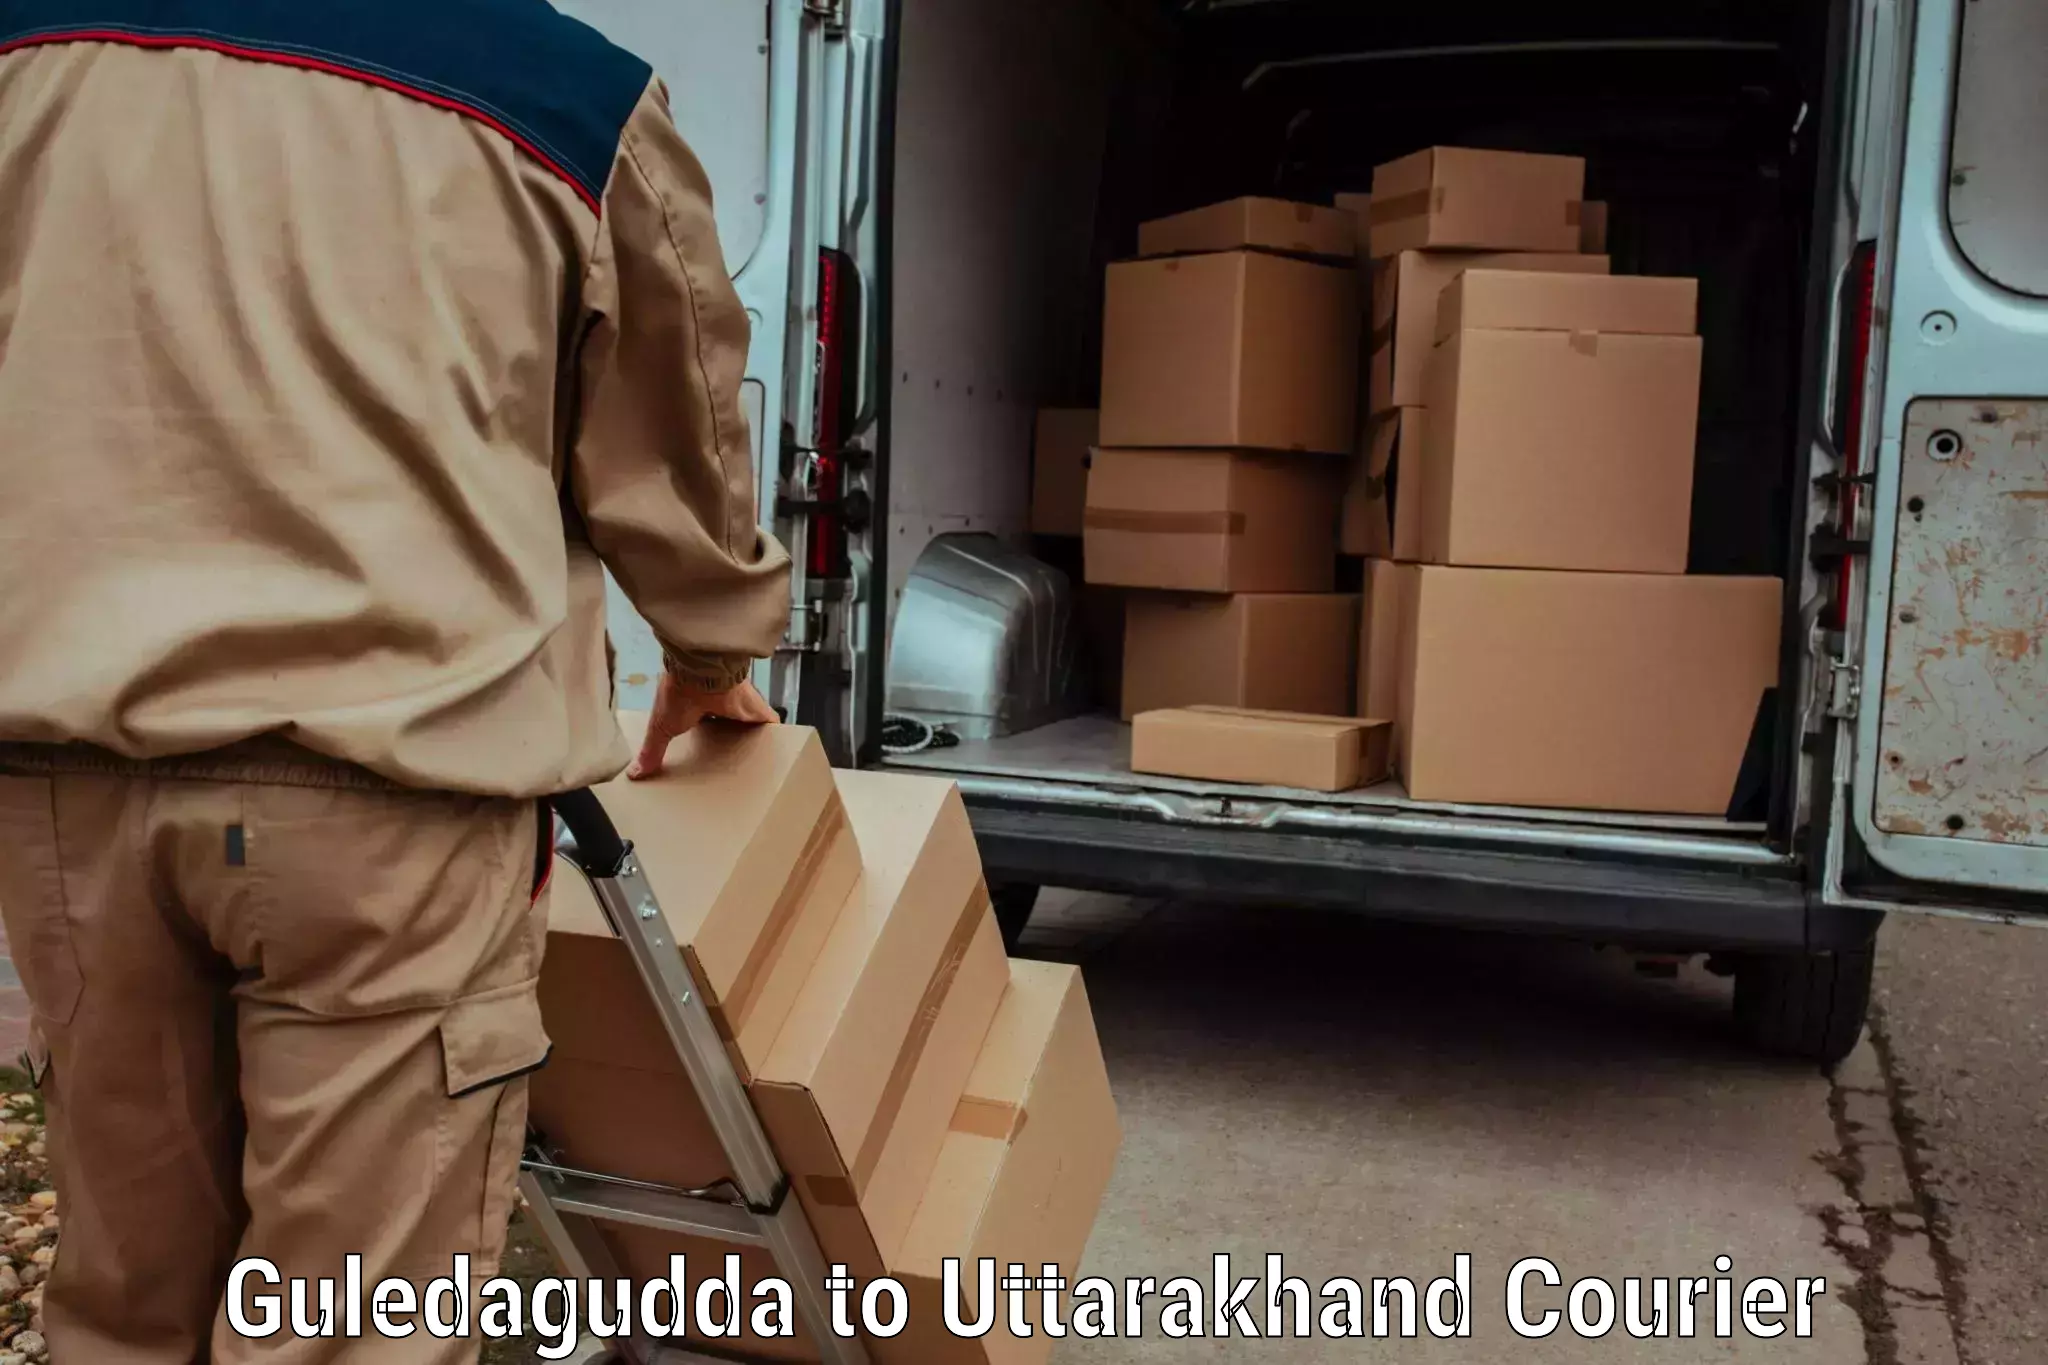 Doorstep luggage collection Guledagudda to Uttarakhand